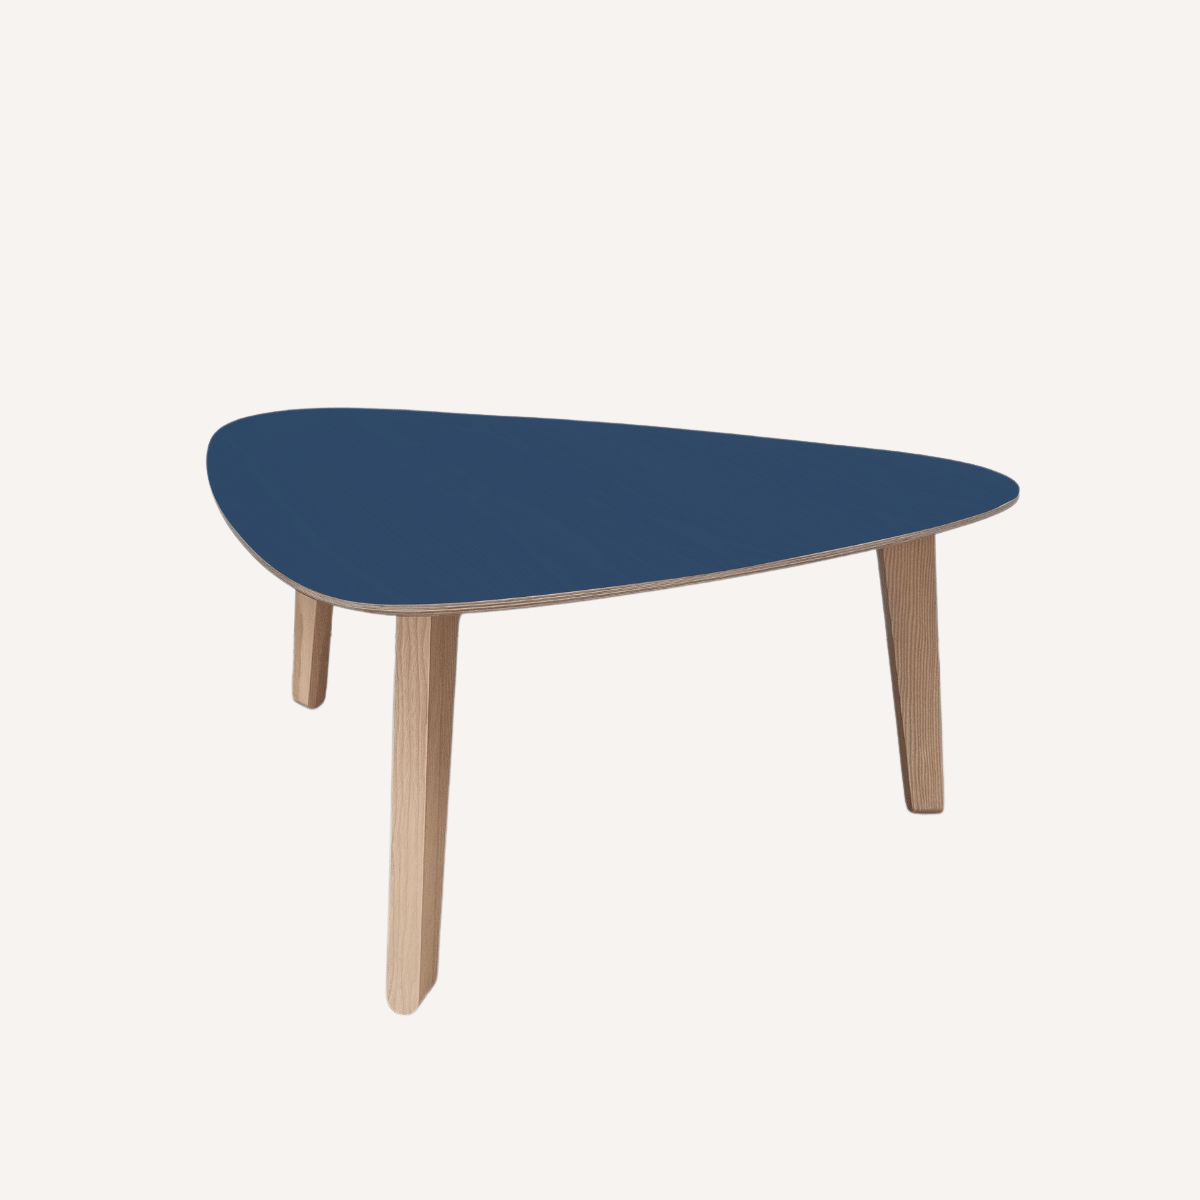 Table basse bleue "Stone" française & design en bois de frêne sain et durable par Skog Design